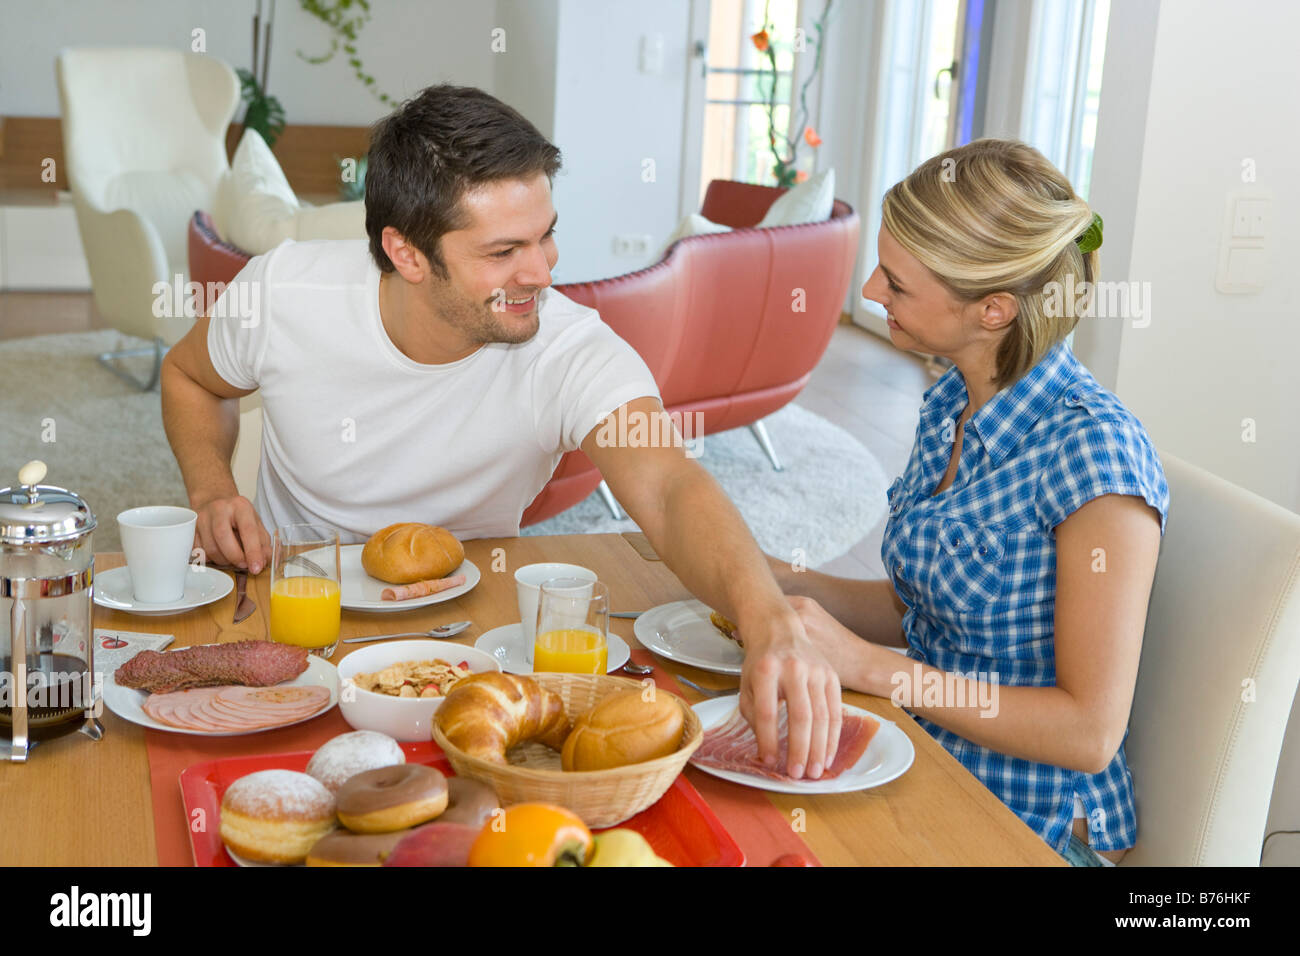 Paar beim gemeinsamen Fruehstueck, couple having breakfast together Banque D'Images